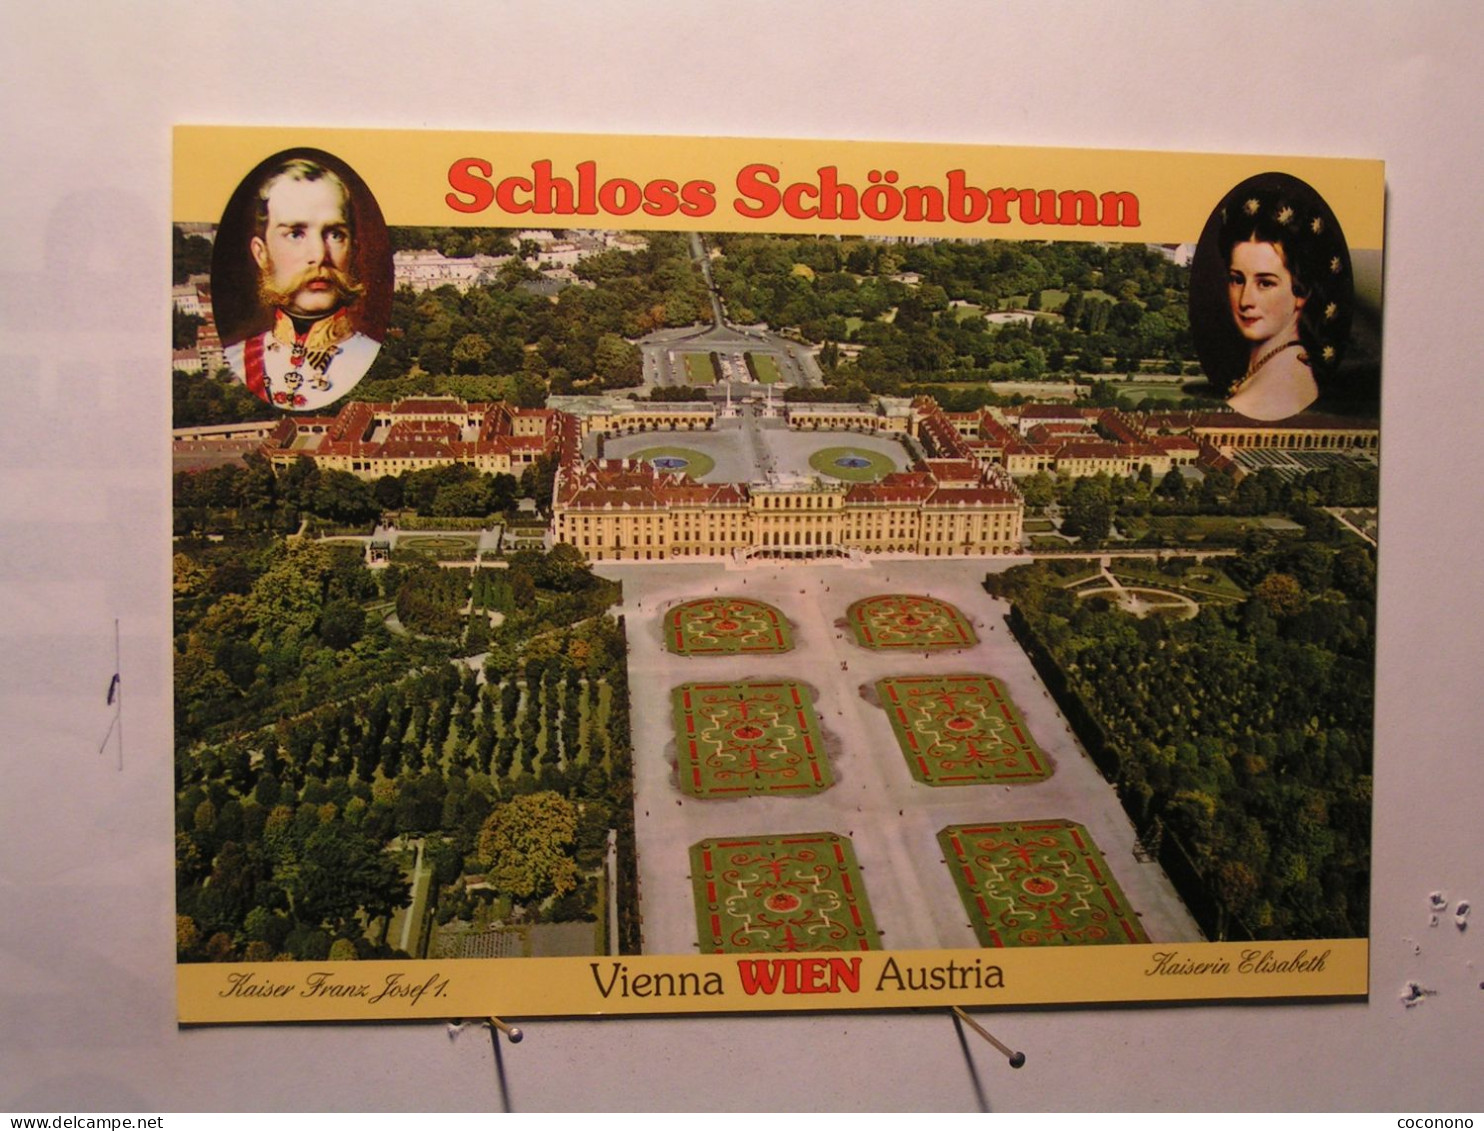 Wien - Schloss Schonbrunn - Schönbrunn Palace